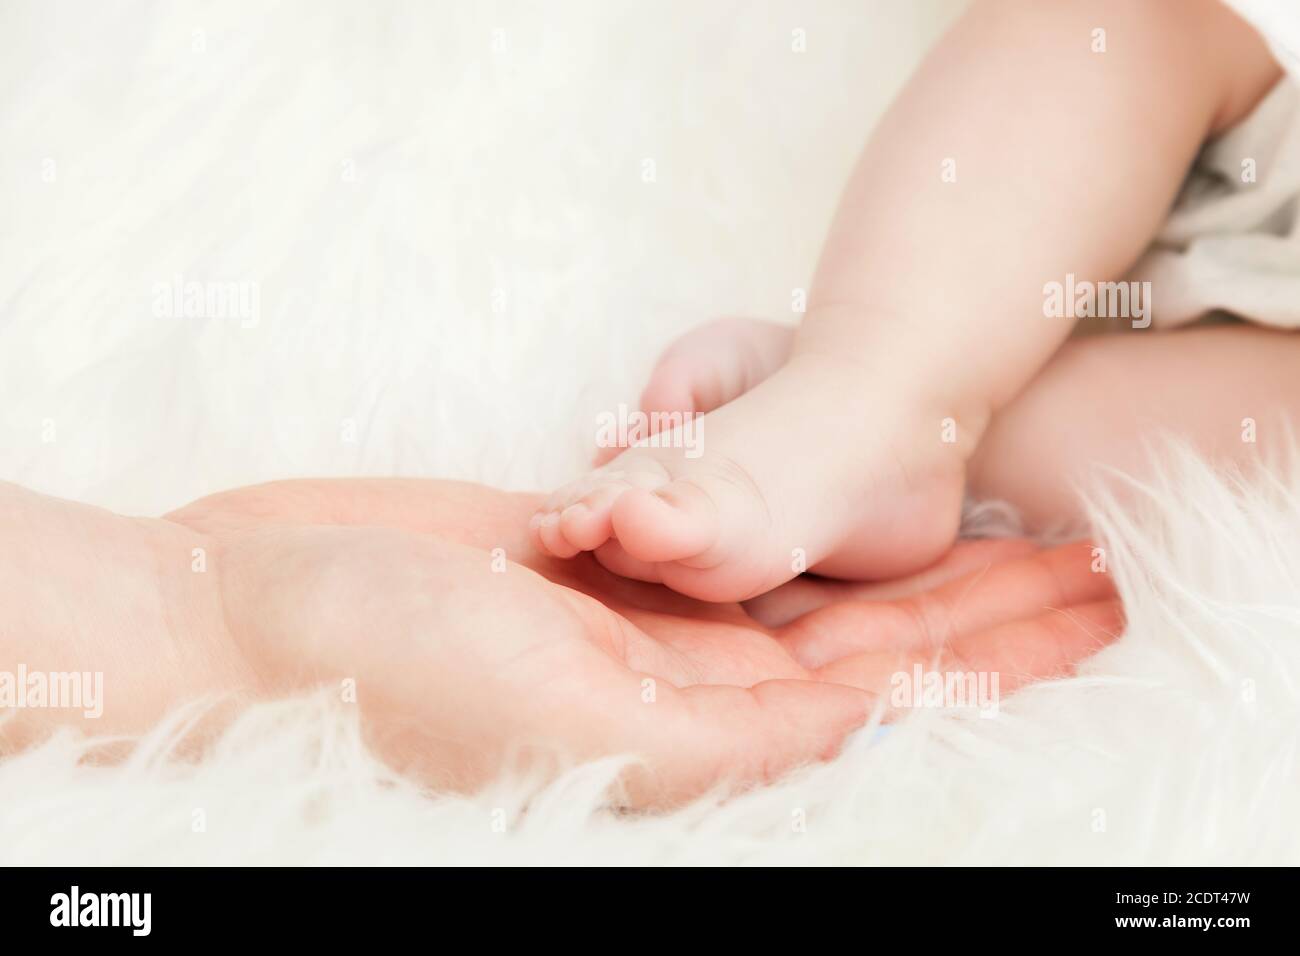 Nouveau-né pied bébé dans la main de mère#39;s. Garde d'enfants, amour, protection Banque D'Images